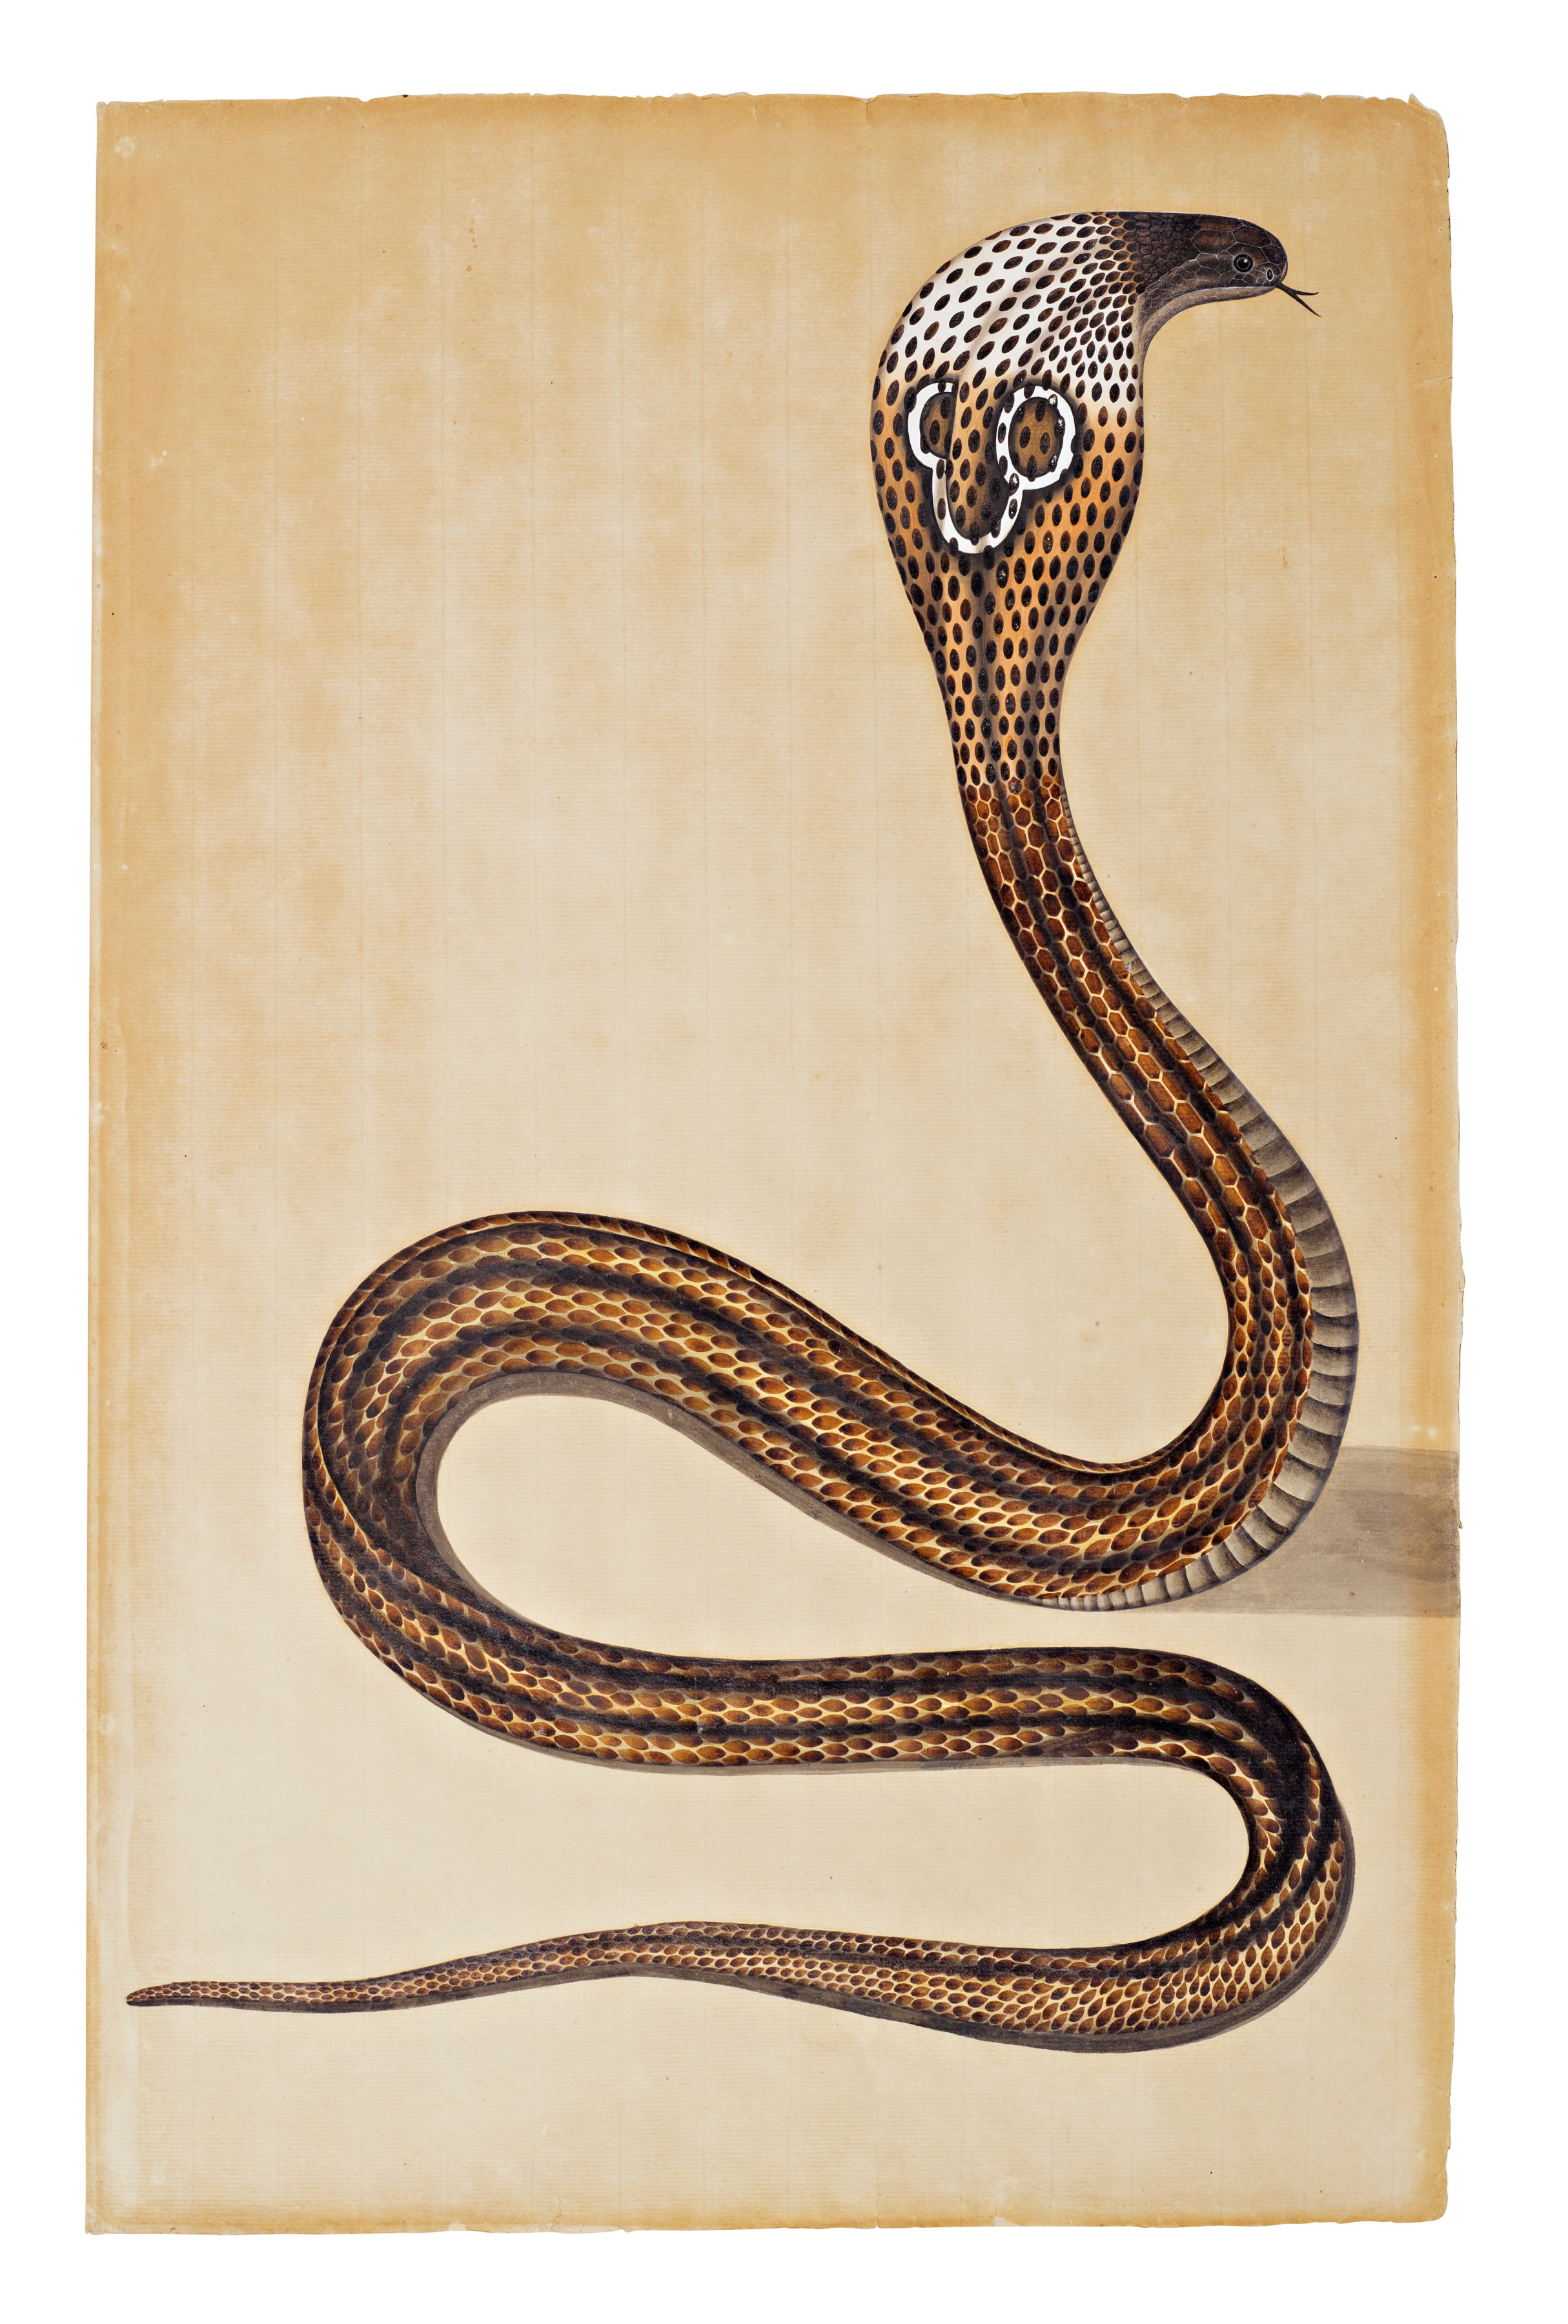 A Cobra de Capello - Company School, Calcutta - Artworks-Items - Carlton Rochell